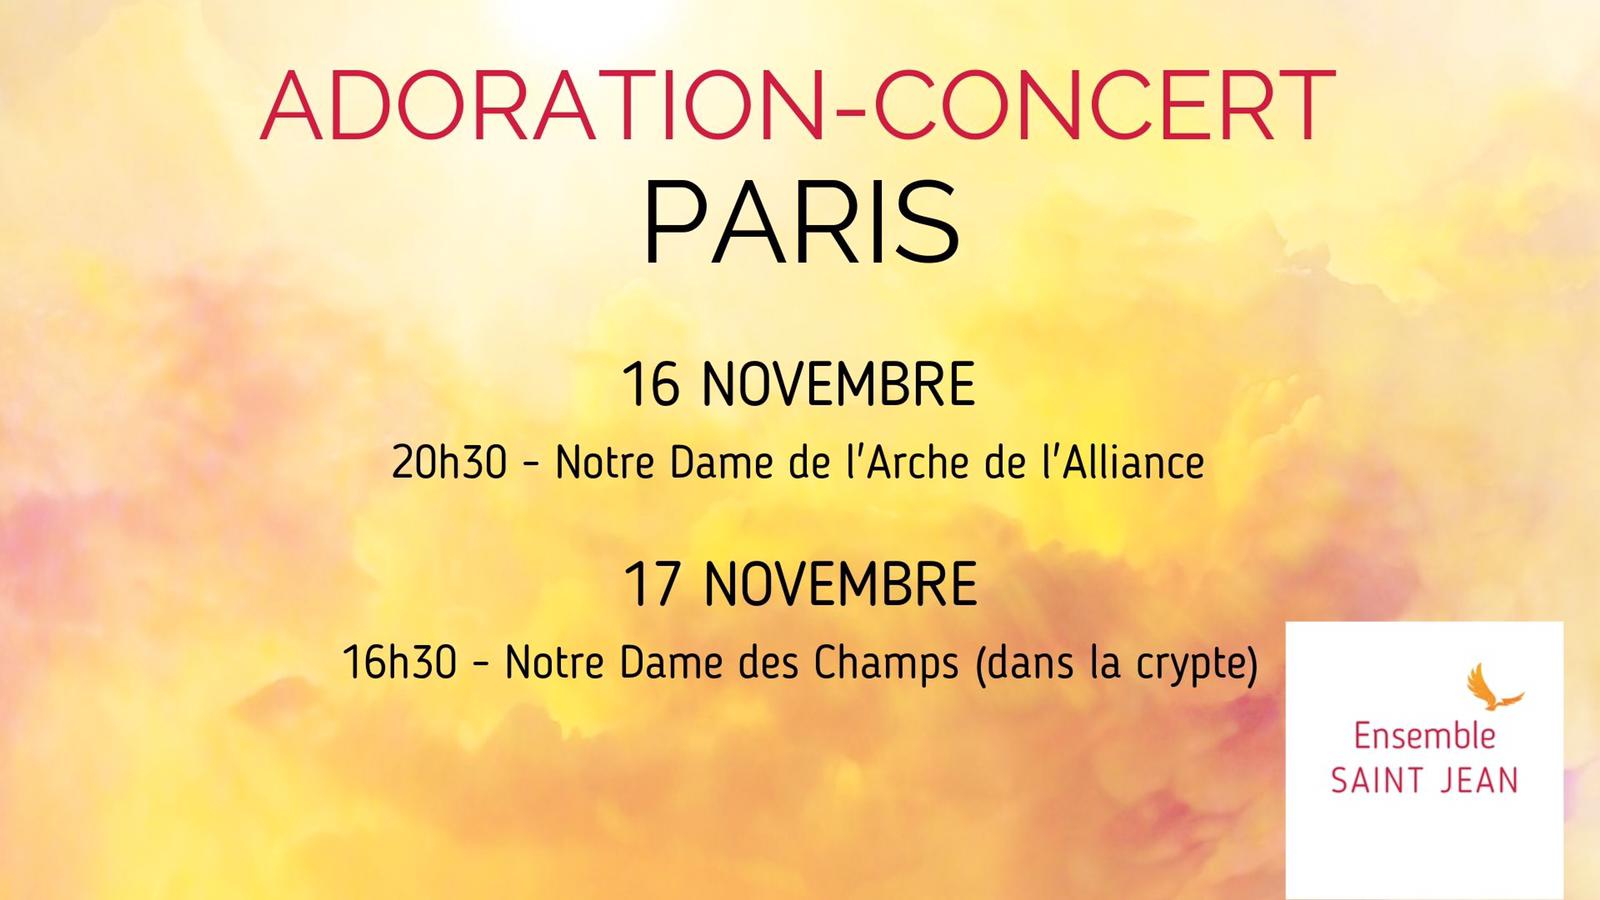 Adoration-Concert de l’Ensemble Saint Jean – 16 & 17 novembre 2019 à Paris